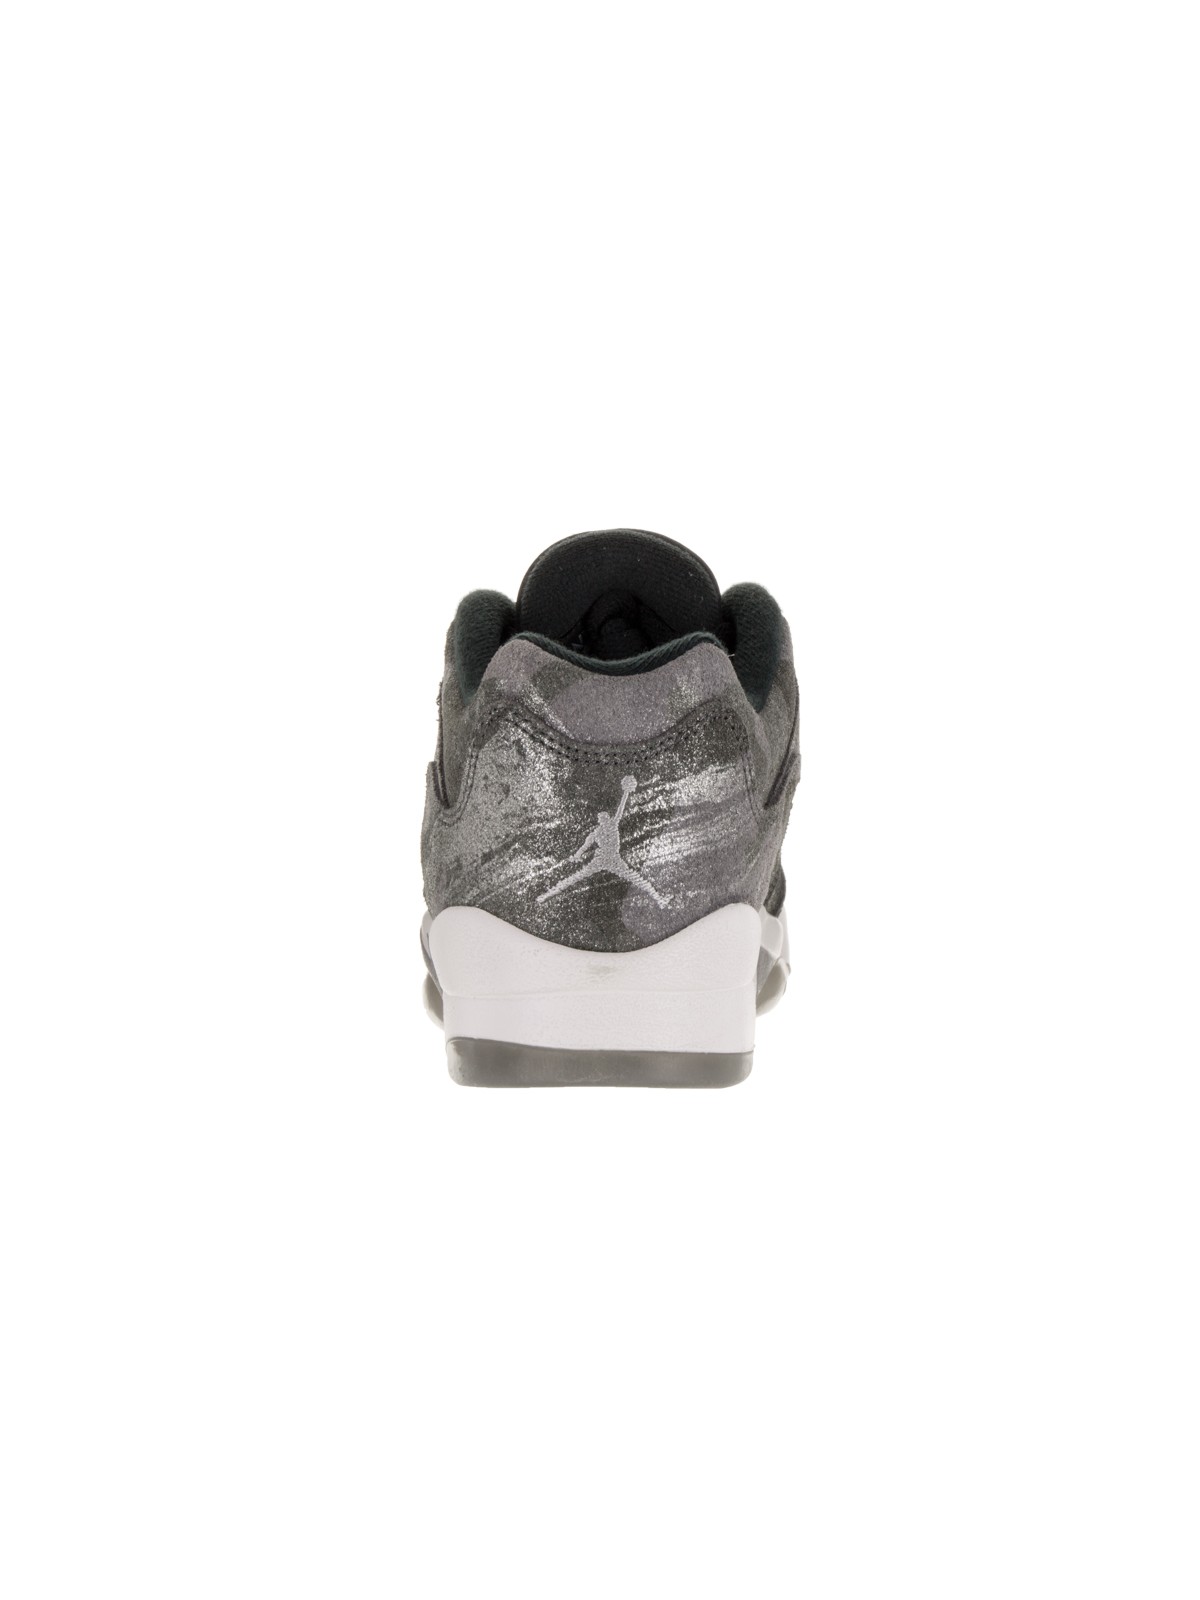 Nike Jordan Kids Air Jordan 5 Retro Prem Low GG Basketball Shoe - image 4 of 5